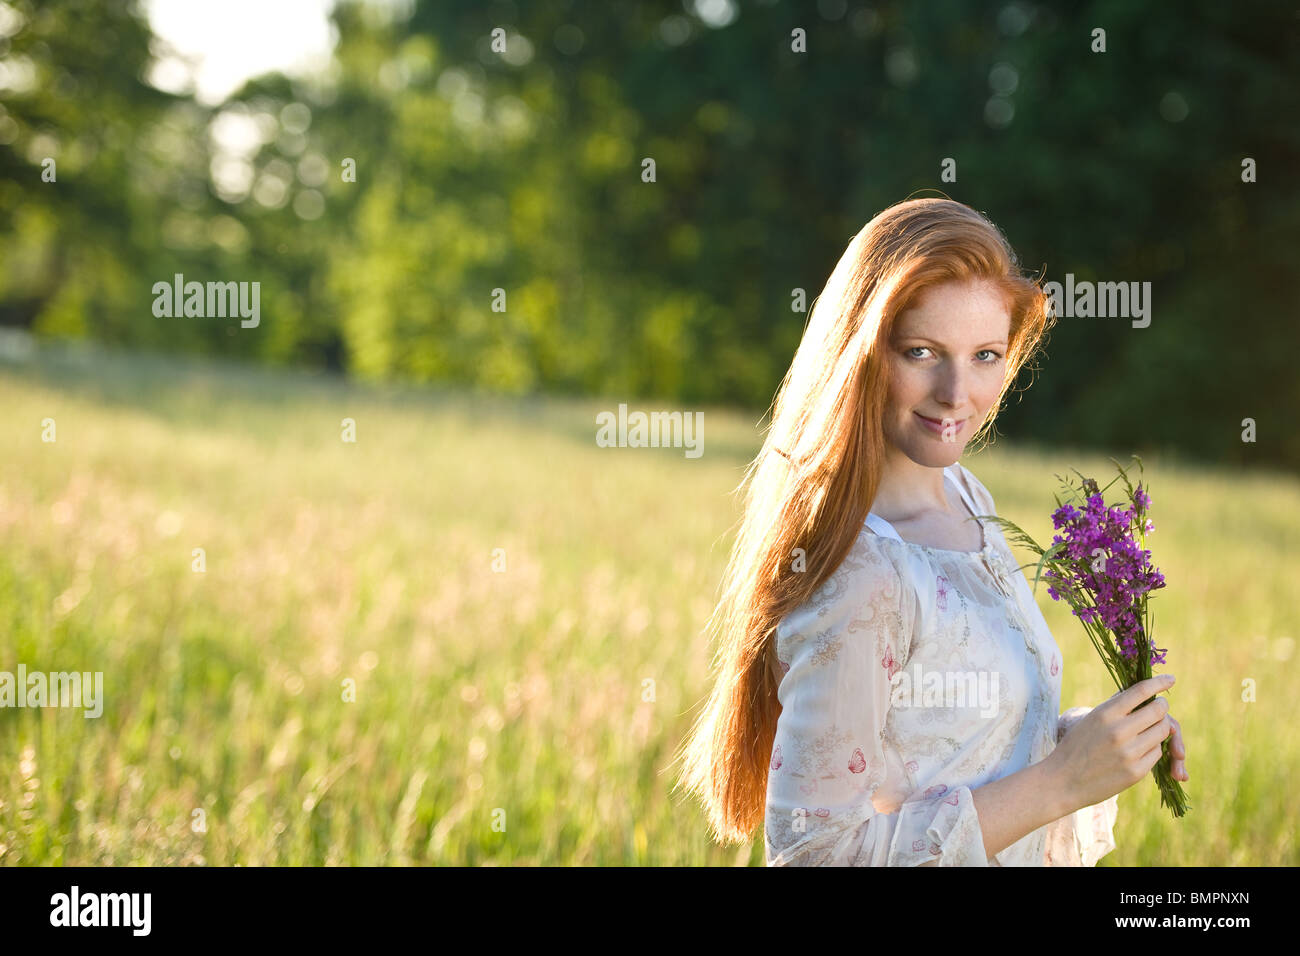 Langes rotes Haar Frau im romantischen Sonnenuntergang Wiese mit Blumenstrauß Stockfoto